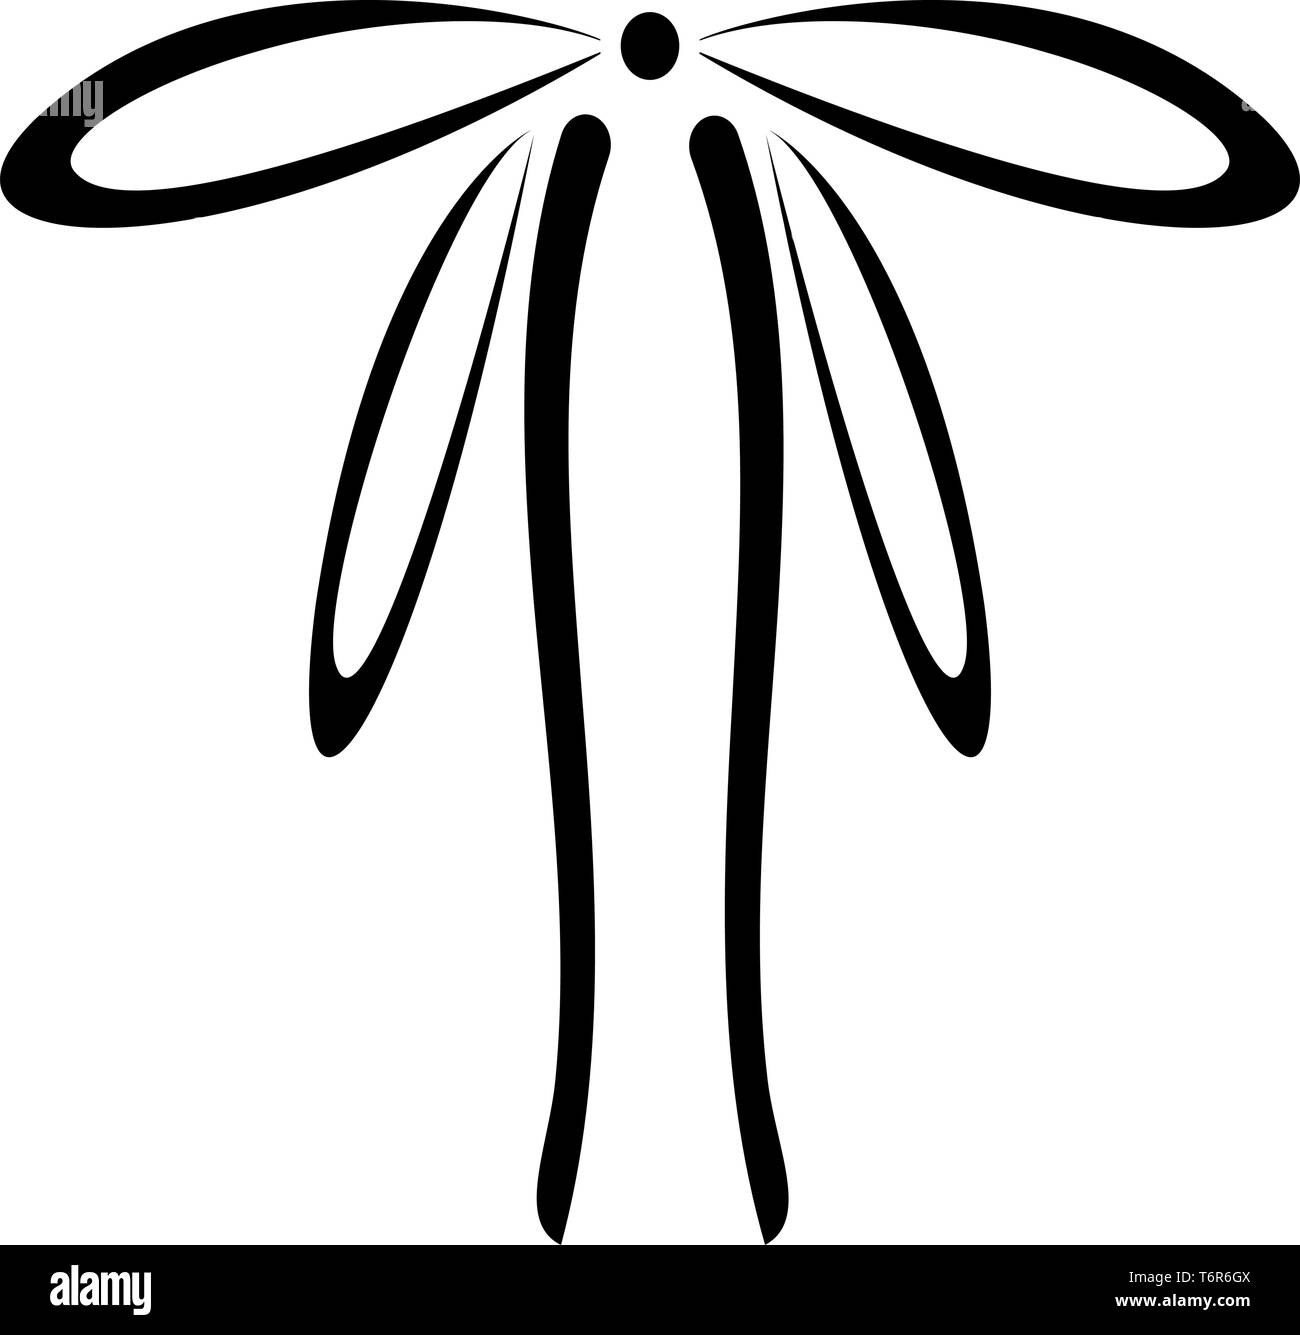 Rubans d'emballage avec Bow concept ornement ruban décoratif cadeau bow curl présente icon noir vector illustration couleur style plat simple image Illustration de Vecteur